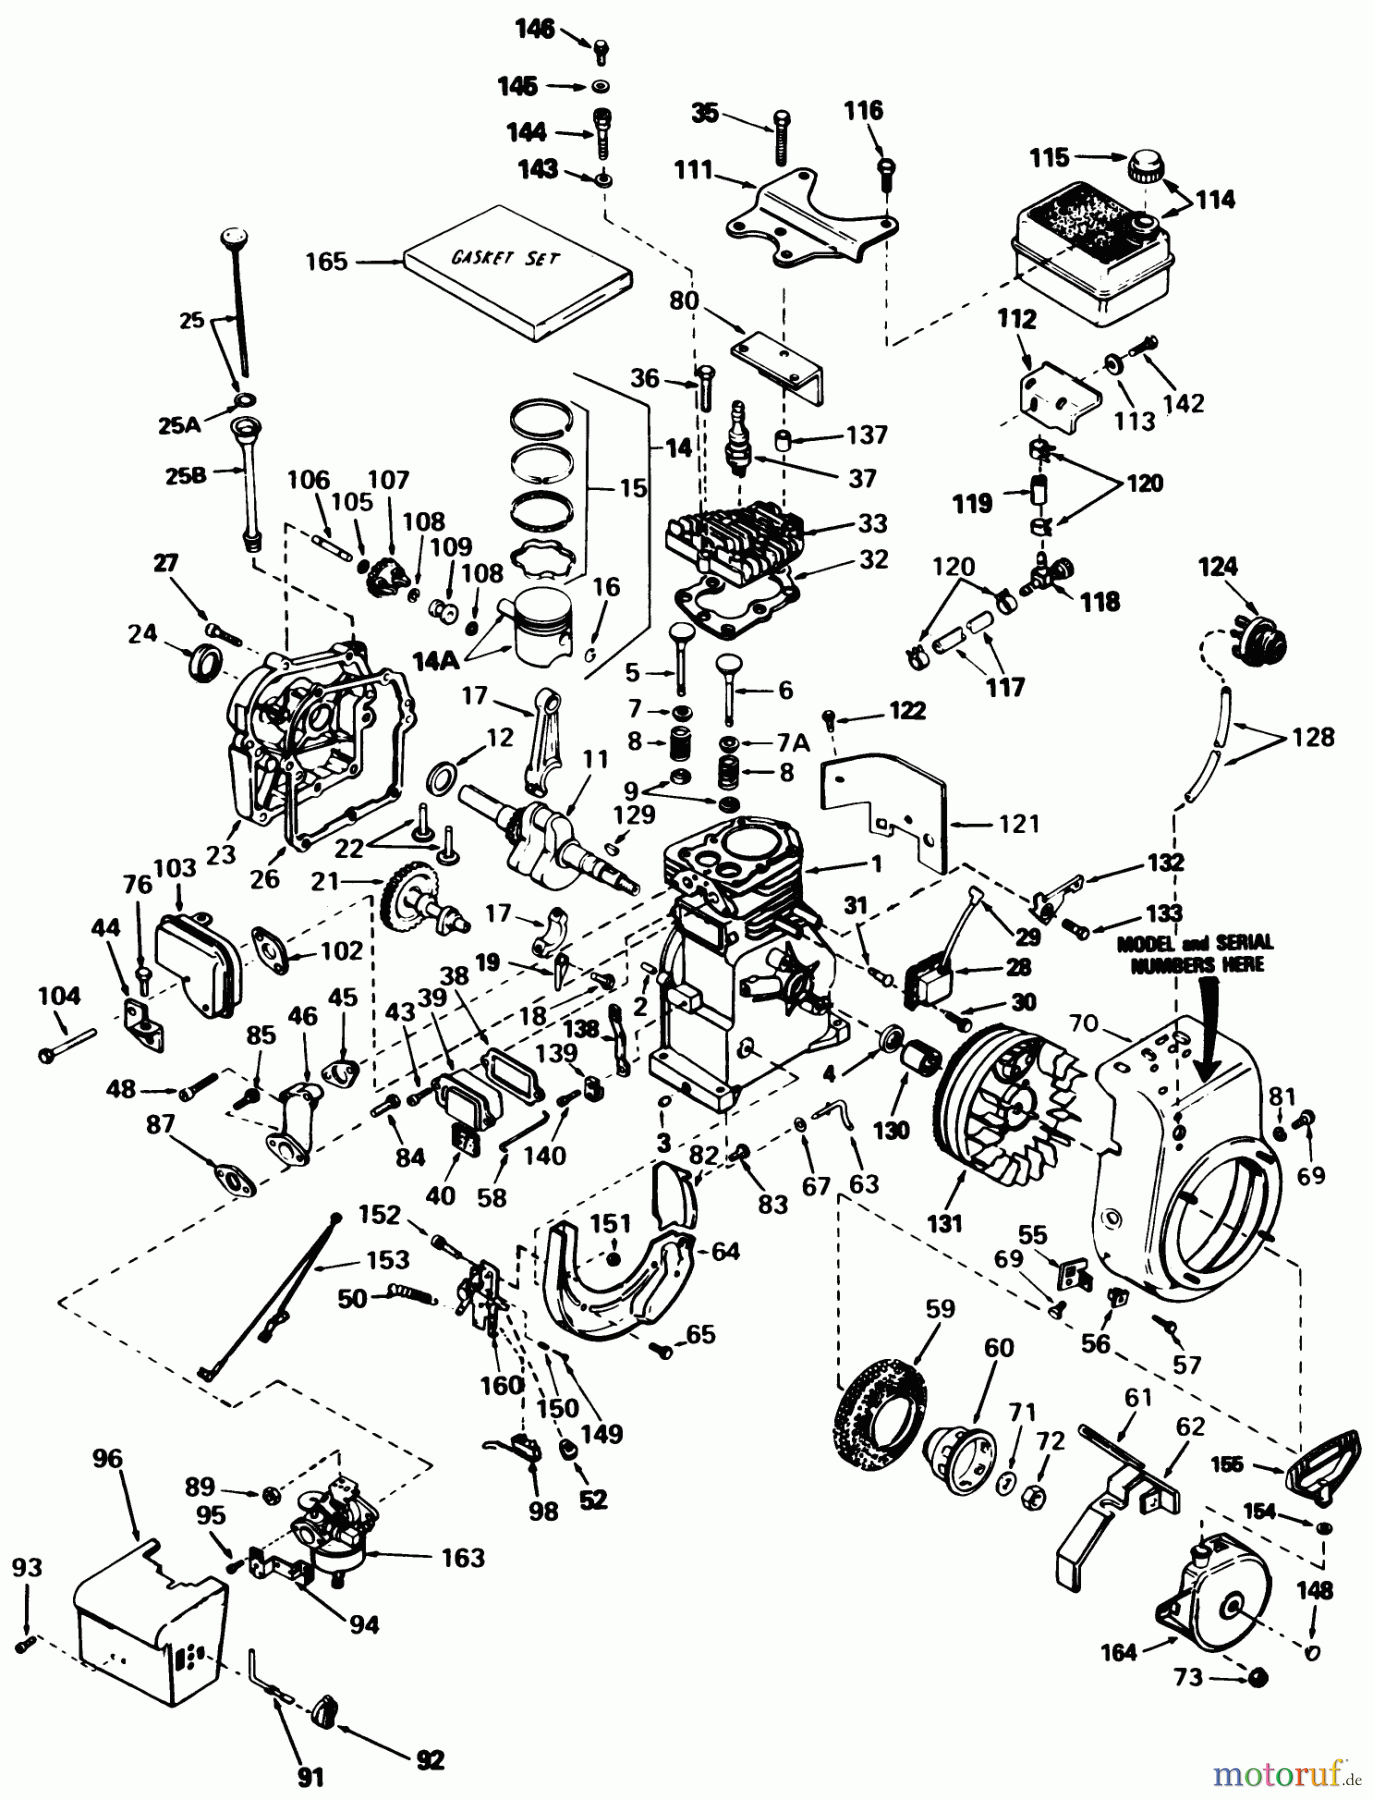  Toro Neu Snow Blowers/Snow Throwers Seite 1 38056 (521) - Toro 521 Snowthrower, 1986 (6000001-6999999) ENGINE TECUMSEH MODEL HS50-67259F